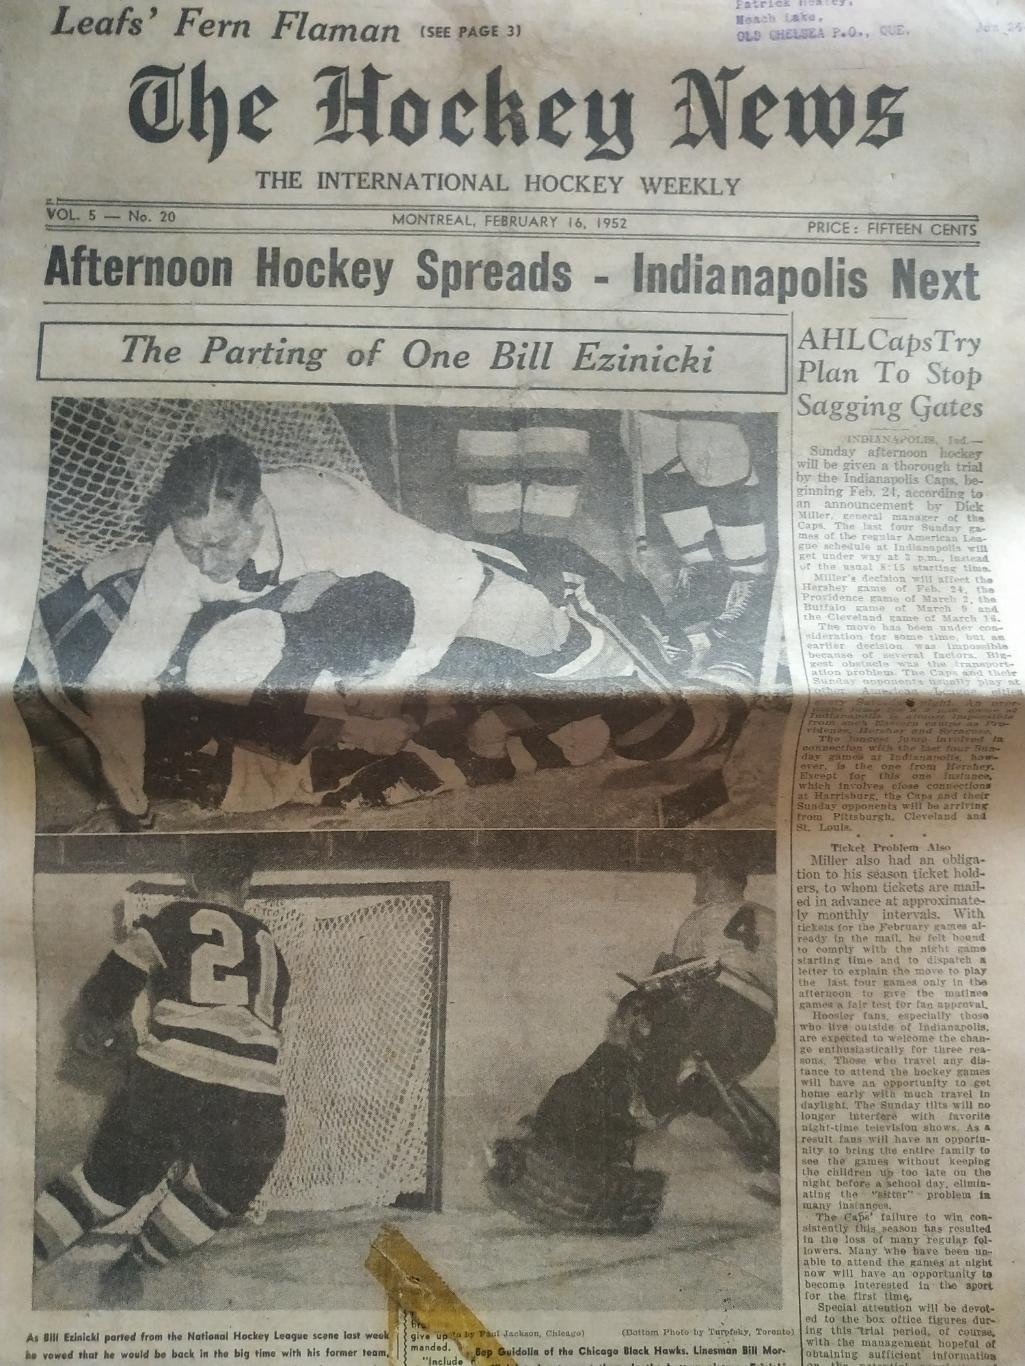 ХОККЕЙ ЖУРНАЛ ЕЖЕНЕДЕЛЬНИК НХЛ НОВОСТИ ХОККЕЯ FEB.16 1952 NHL THE HOCKEY NEWS